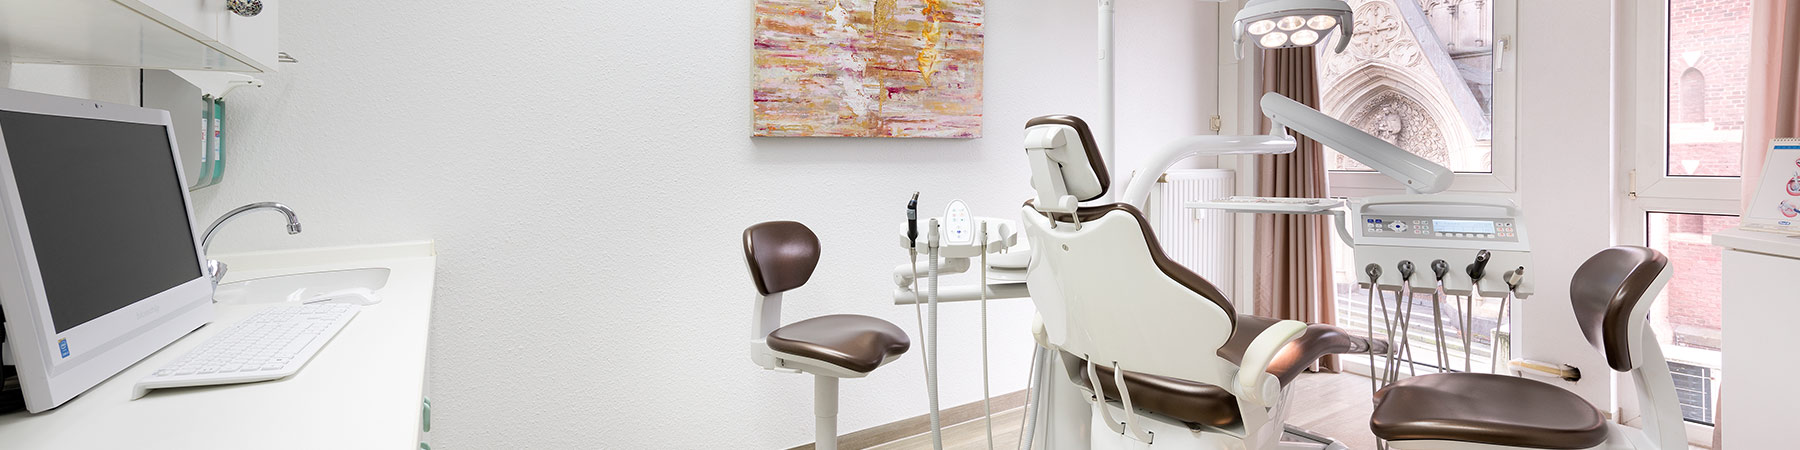 Lasertherapie beim Zahnarzt in Mönchengladbach